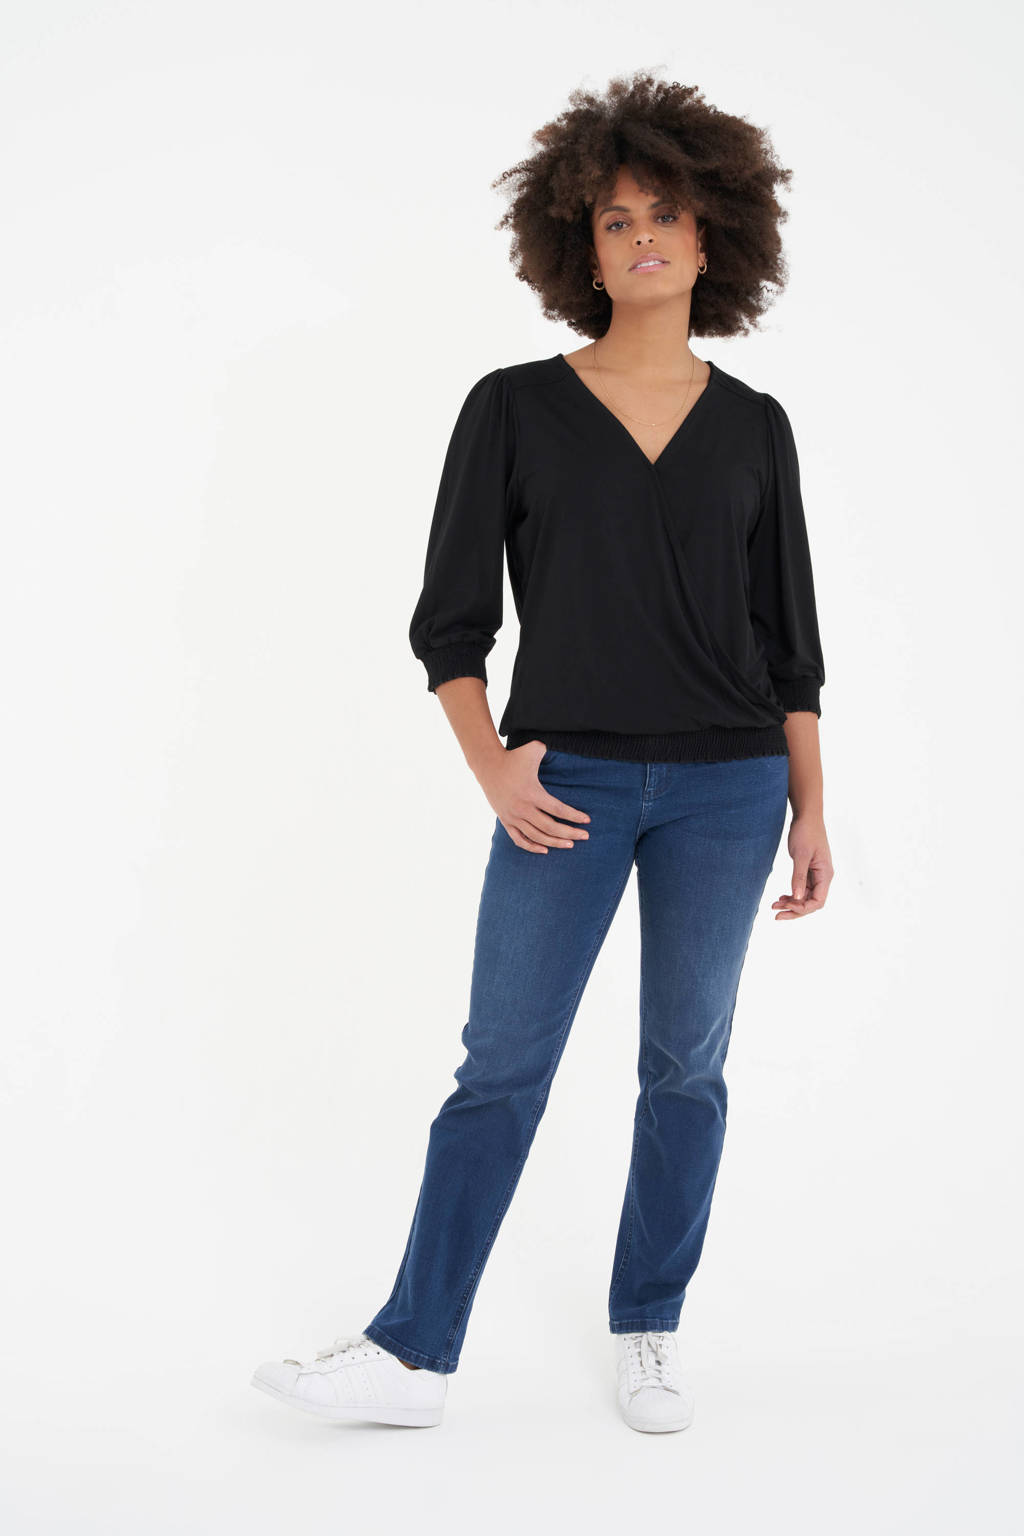 Zwarte dames MS Mode geweven overslag top van viscose met driekwart mouwen en elastische boord